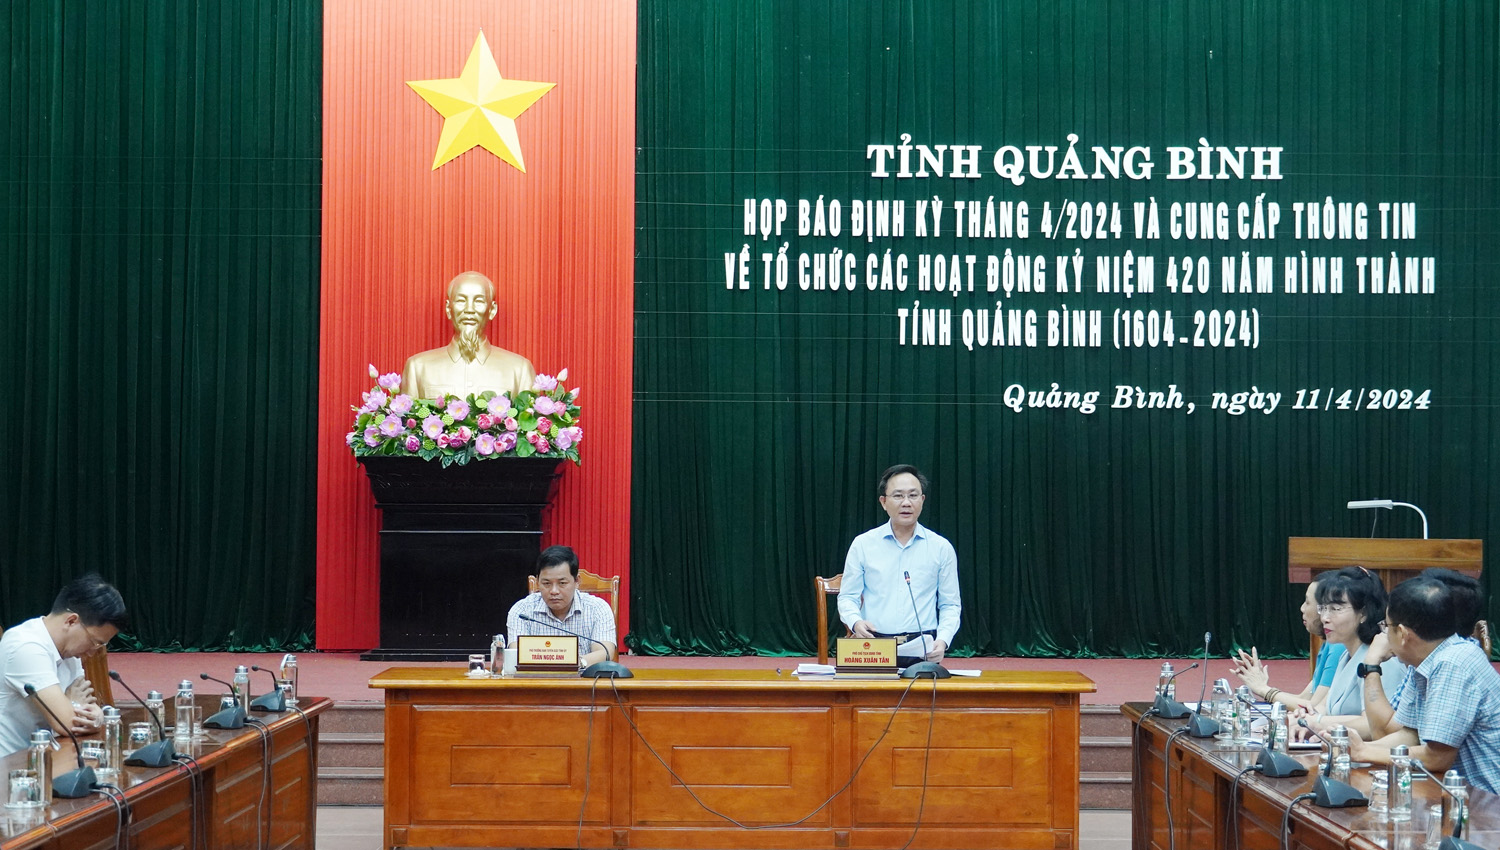 Lễ kỷ niệm 420 năm hình thành tỉnh Quảng Bình được tổ chức vào tháng 6/2024